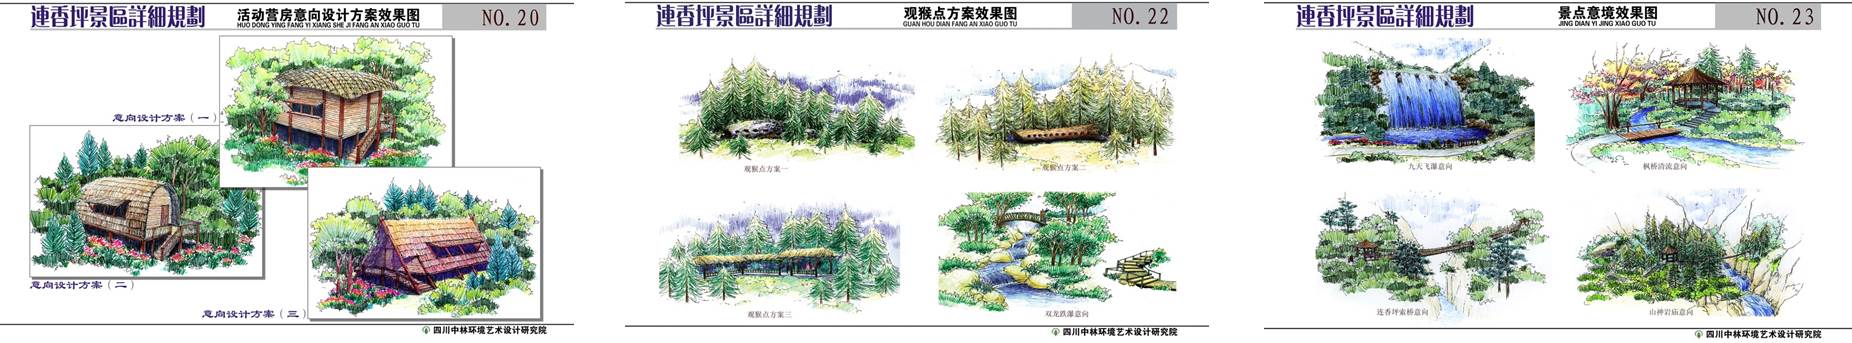 九寨沟白河金丝猴保护区建筑景观设计